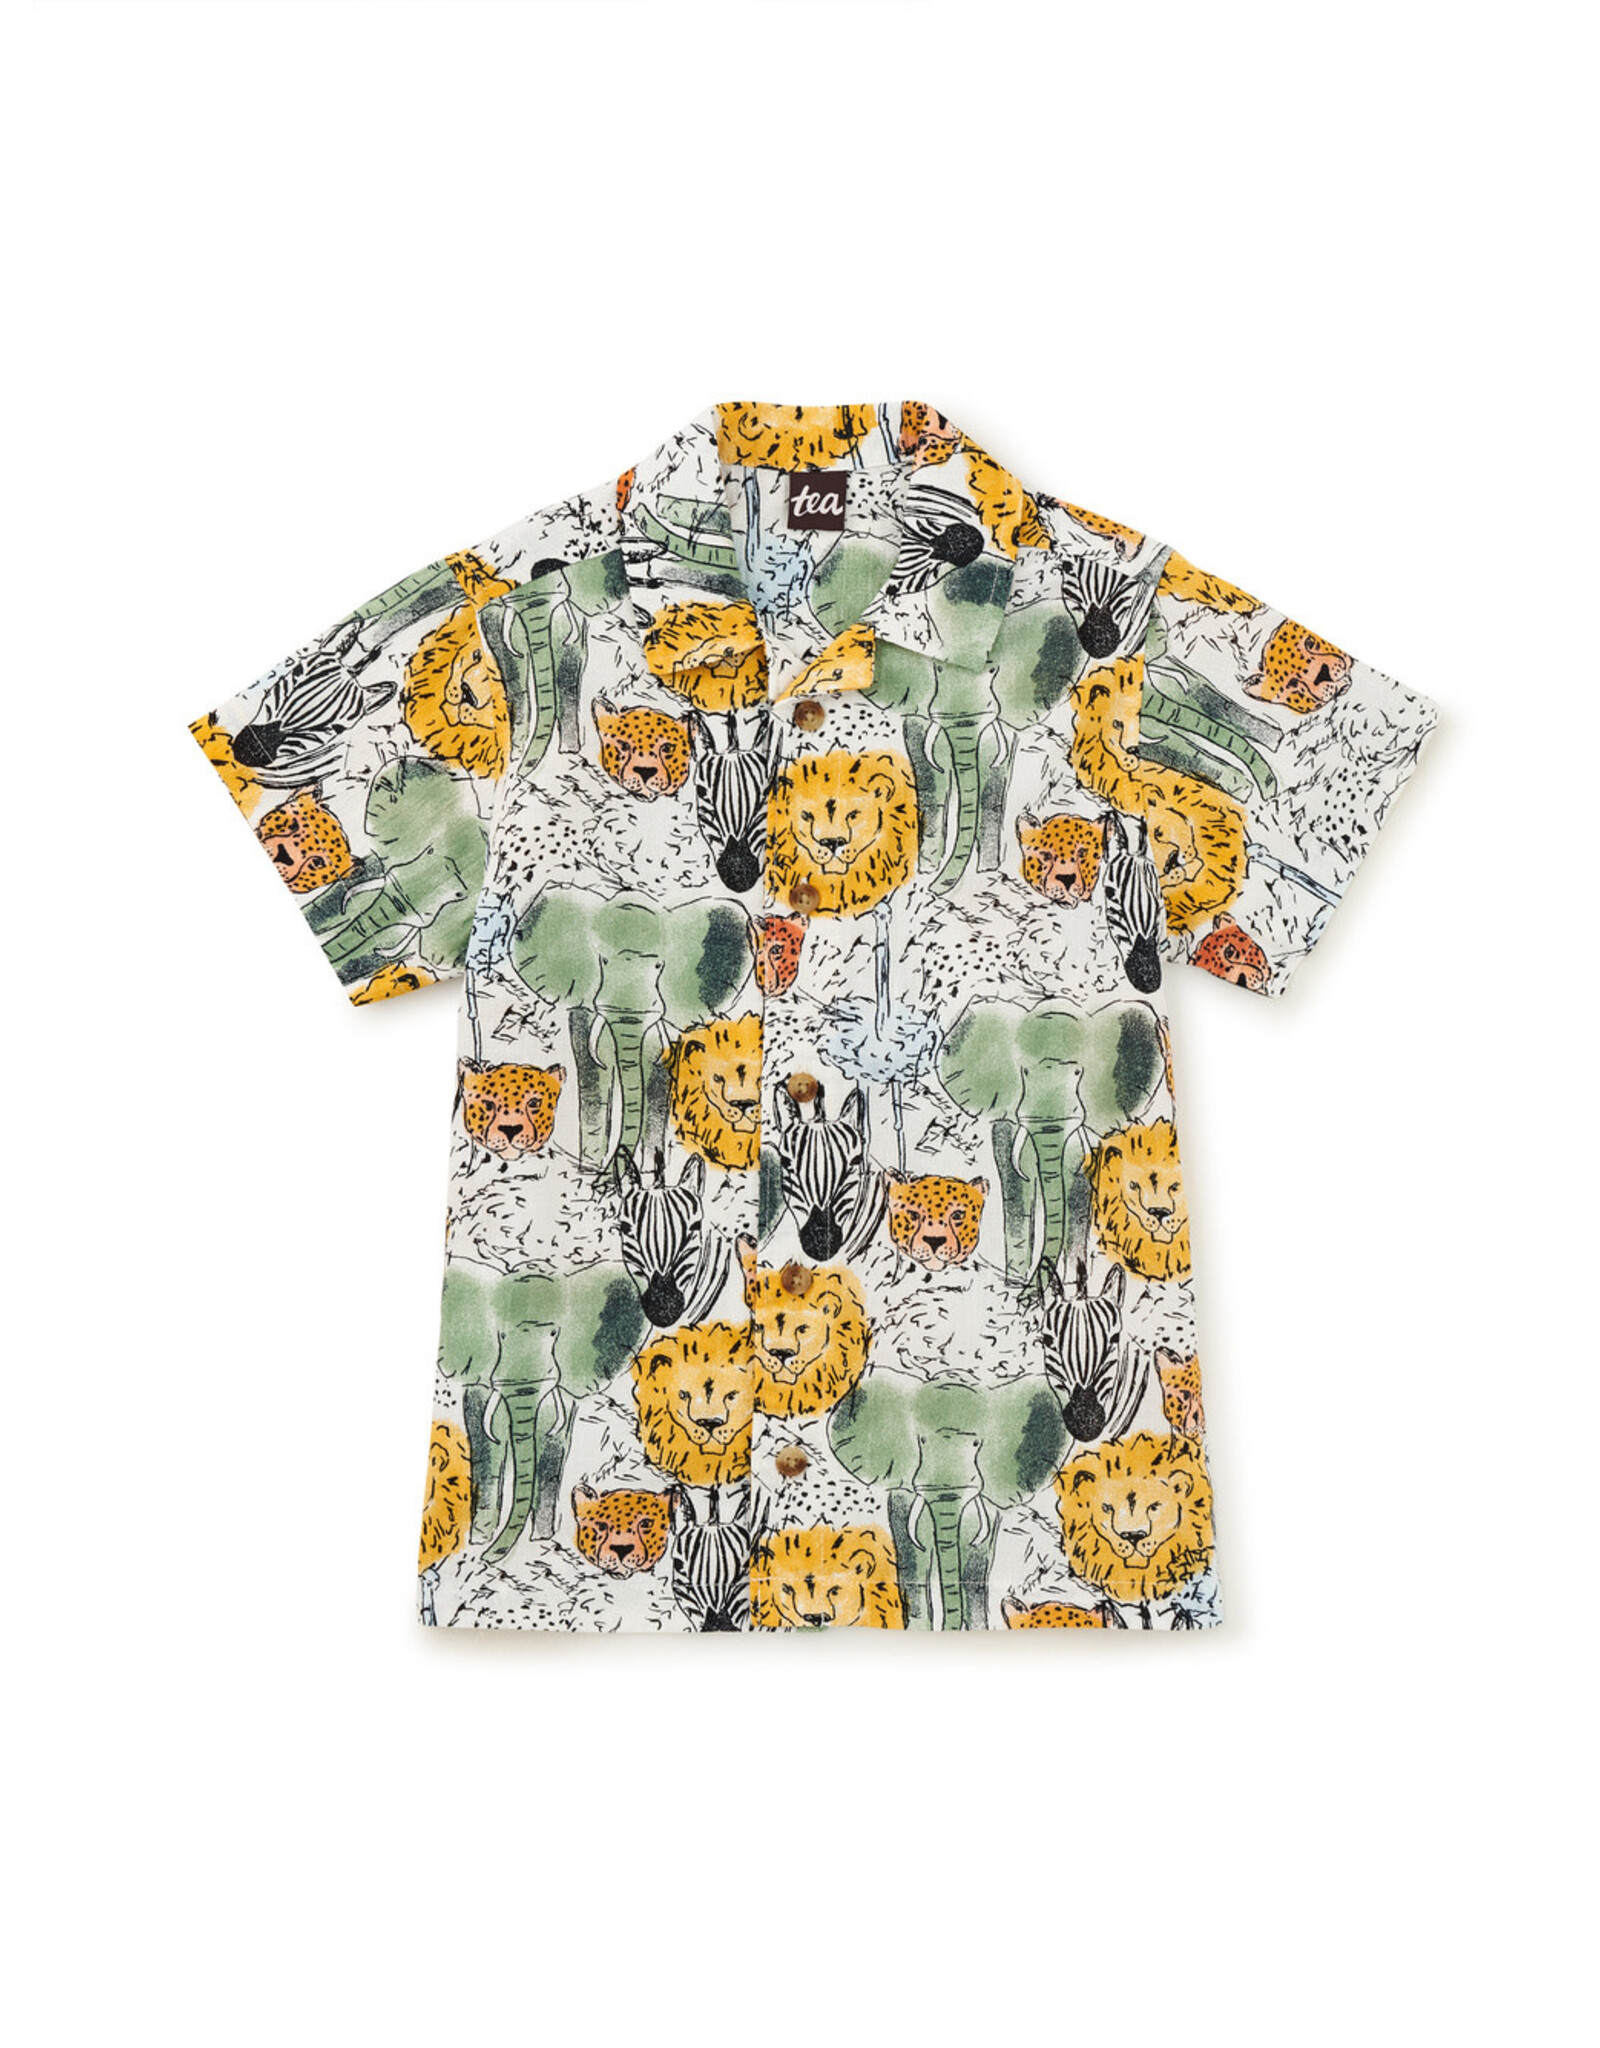 Tea Collection  Printed Camp Shirt-Safari Toile